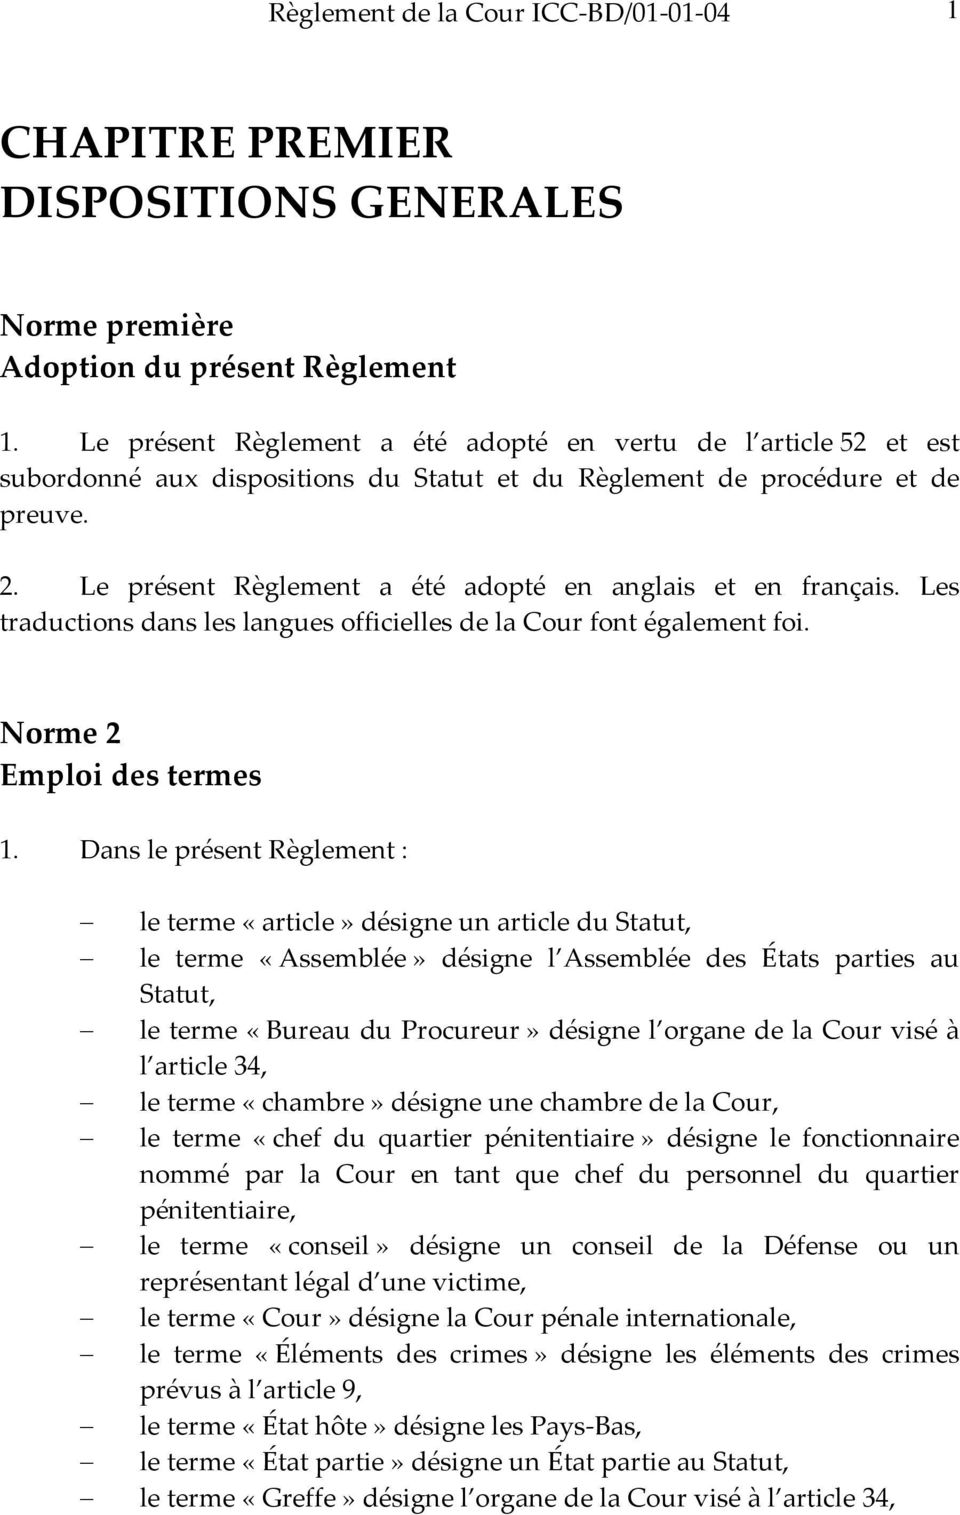 Le présent Règlement a été adopté en anglais et en français. Les traductions dans les langues officielles de la Cour font également foi. Norme 2 Emploi des termes 1.